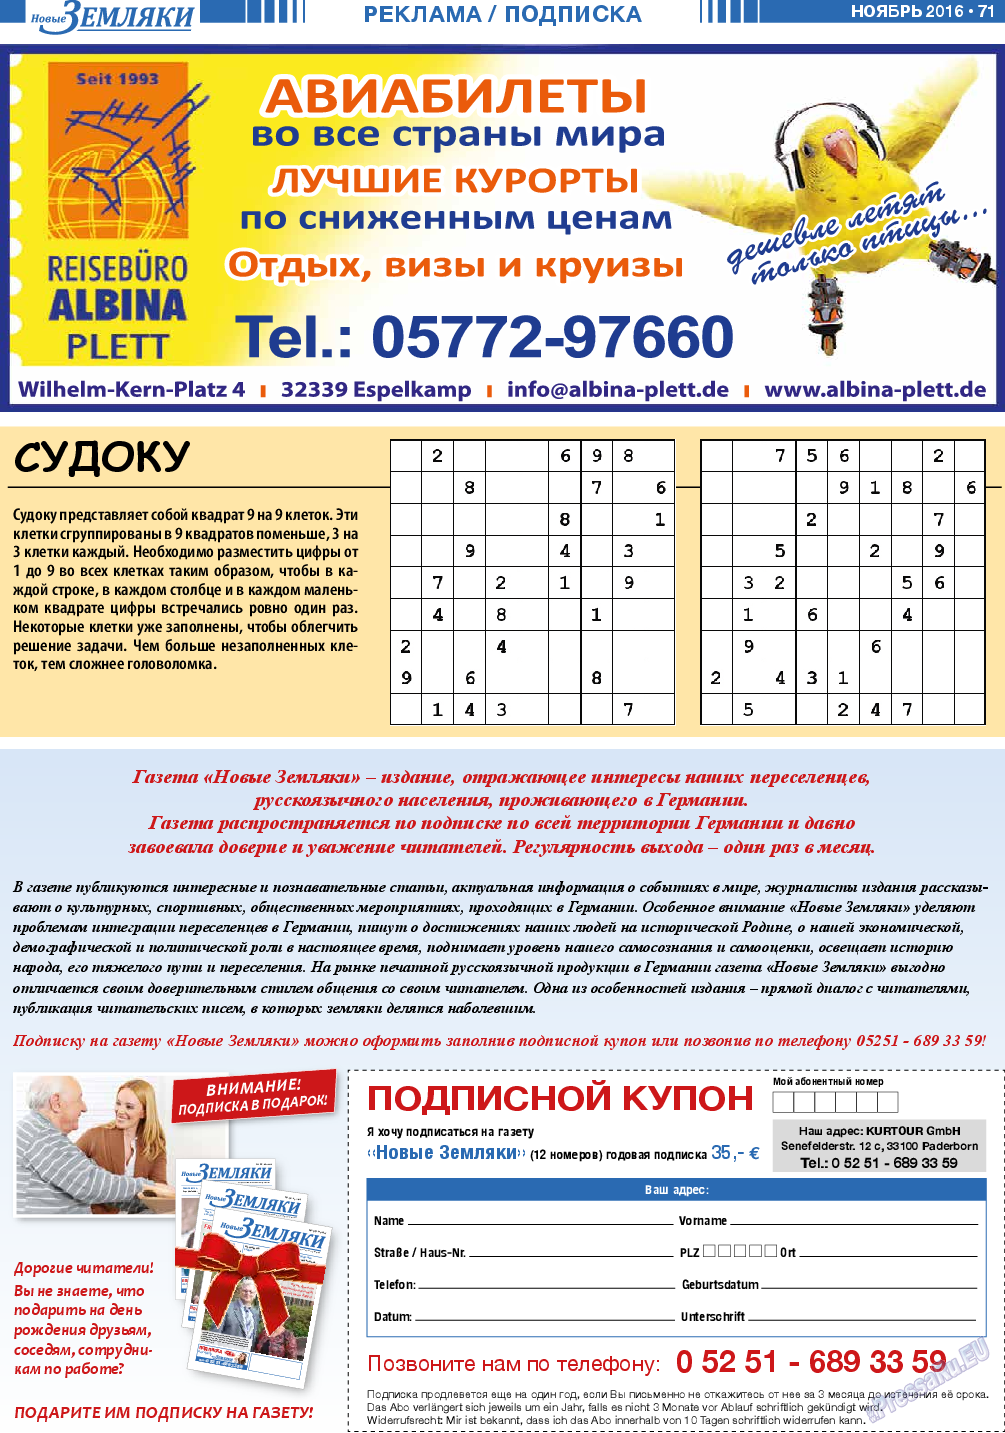 Новые Земляки, газета. 2016 №11 стр.71